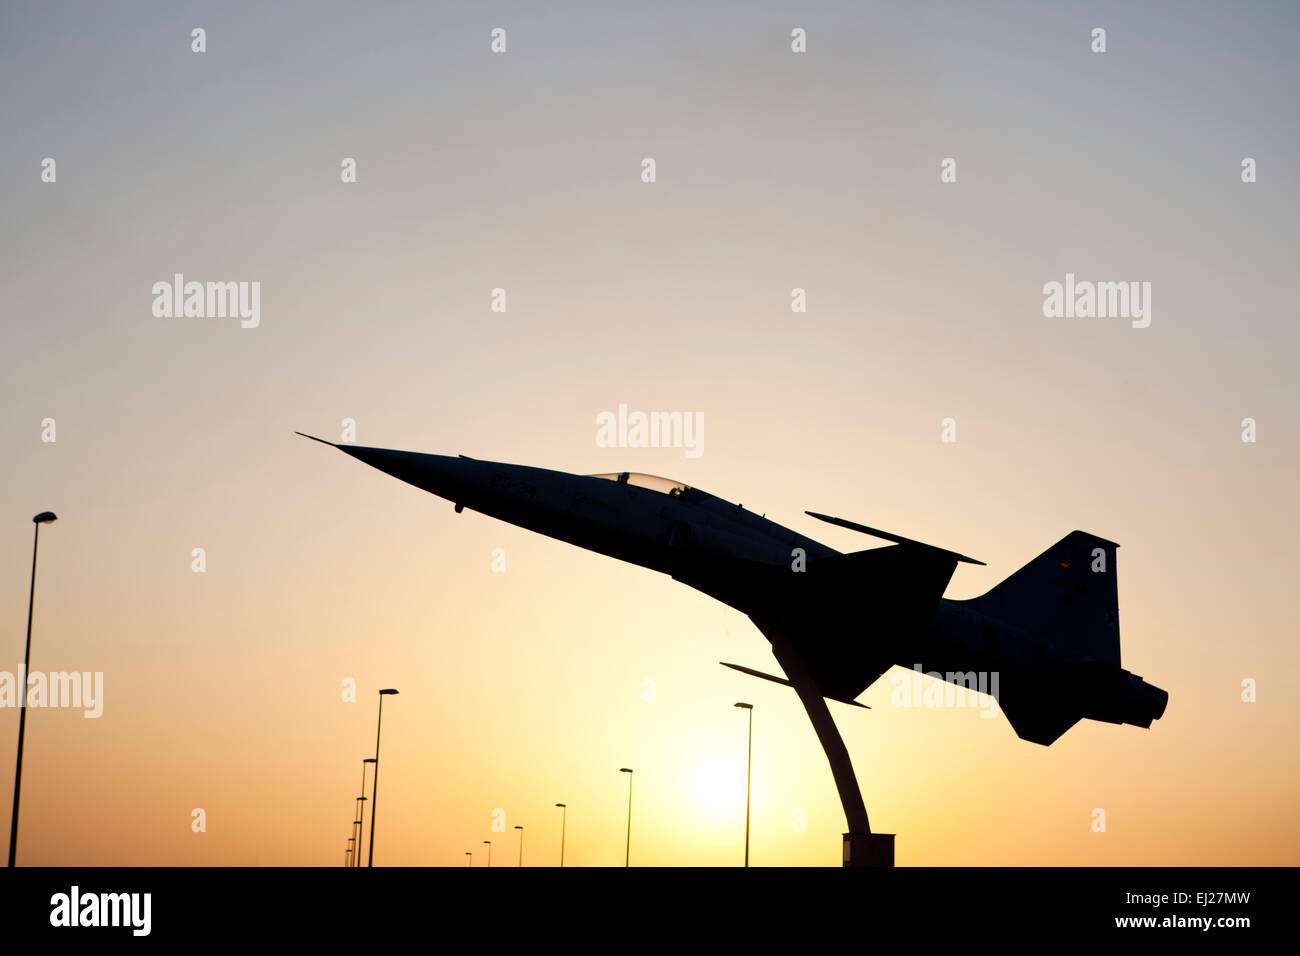 BADAJOZ, ESPAGNE - 13 mars 2015 : l'espagnol à la retraite (CF-5 Freedom Fighter CF-116) placé sur un rond-point de Talavera la Real. Ce Banque D'Images